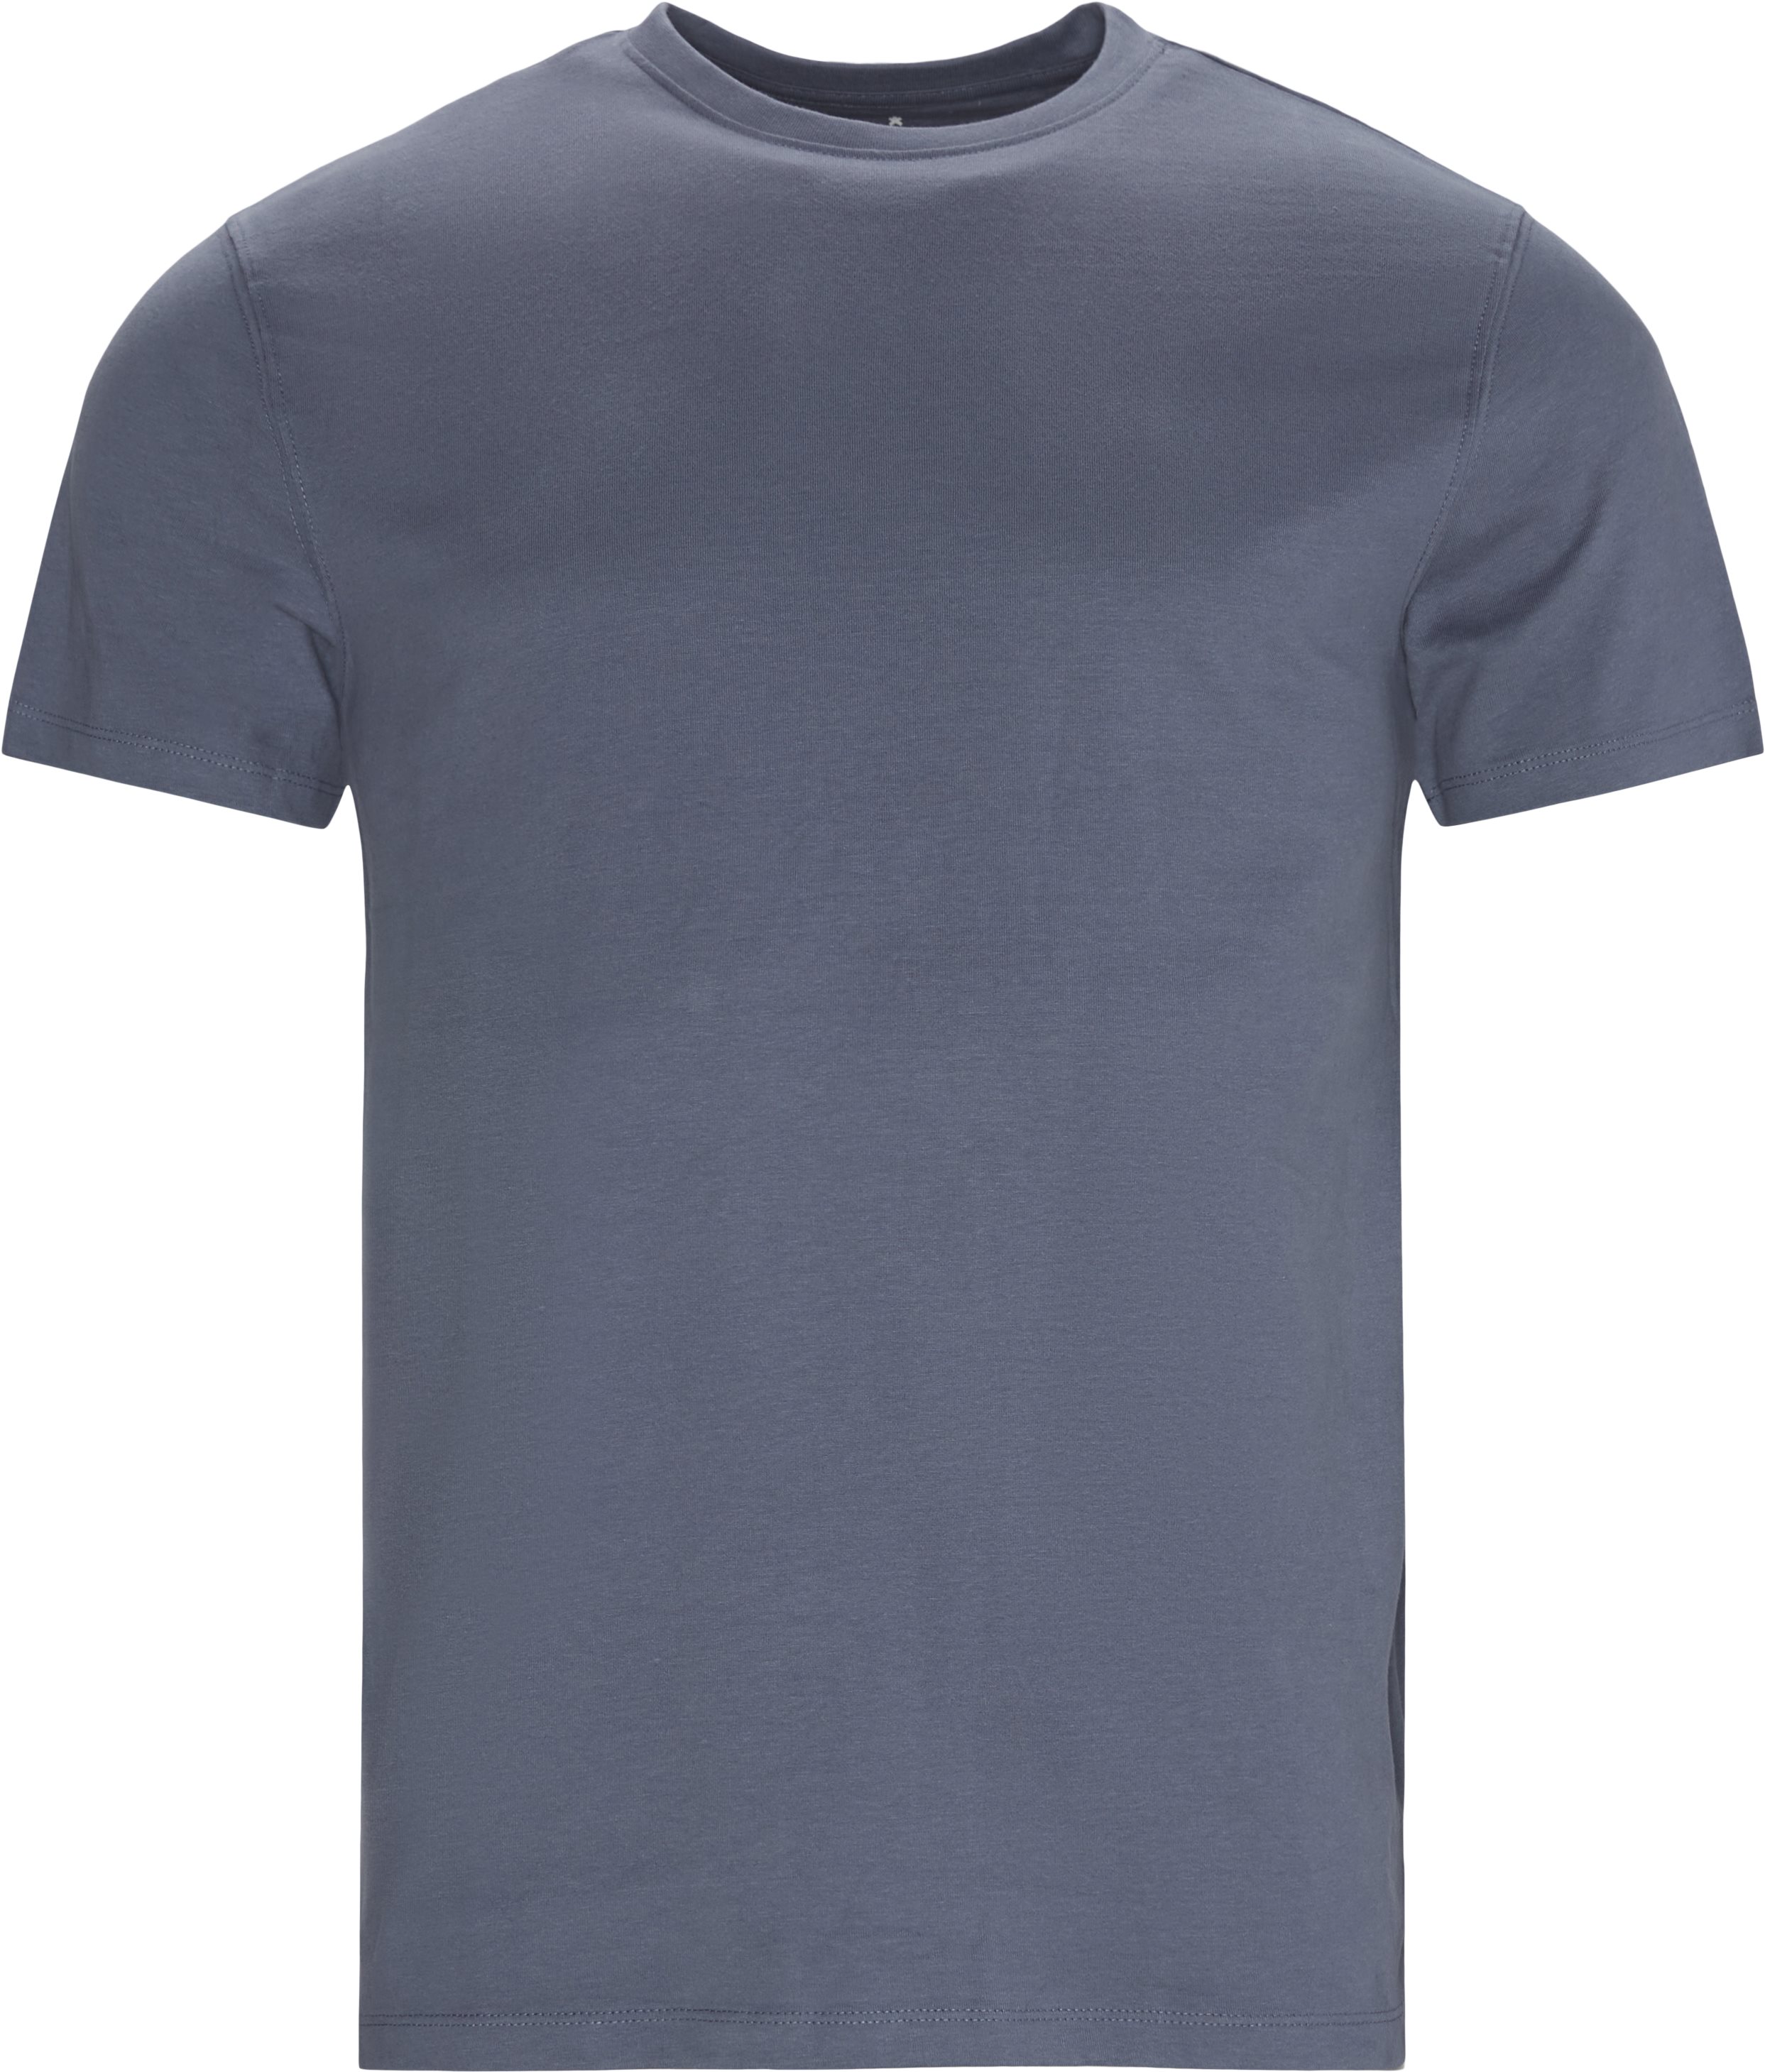 Brandon Crew Neck Tee - T-shirts - Regular fit - Blå